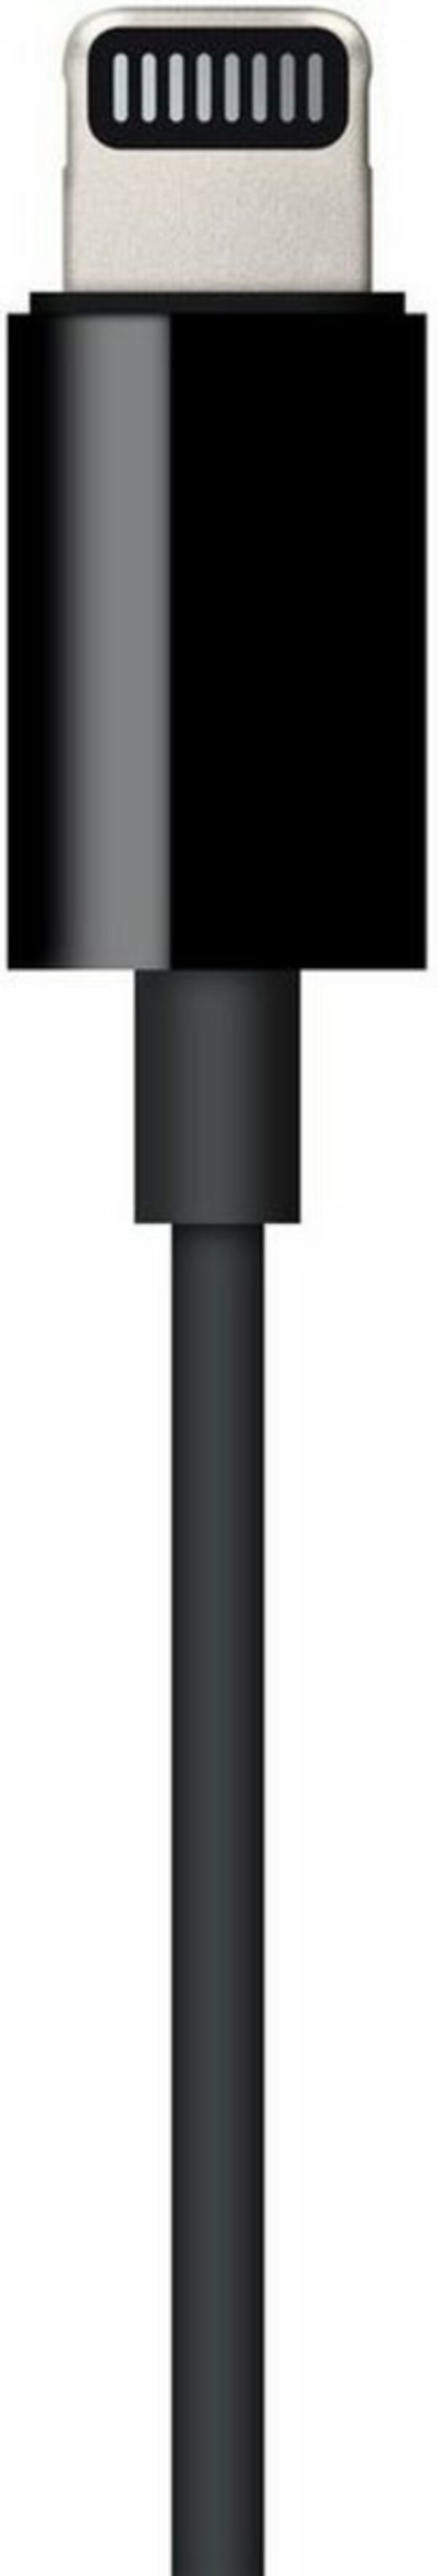 Bild 1 von Apple »Lightning to 3.5mm Audio Cable (1.2m)« Smartphone-Kabel, Lightning, 3,5-mm-Klinke (120 cm)